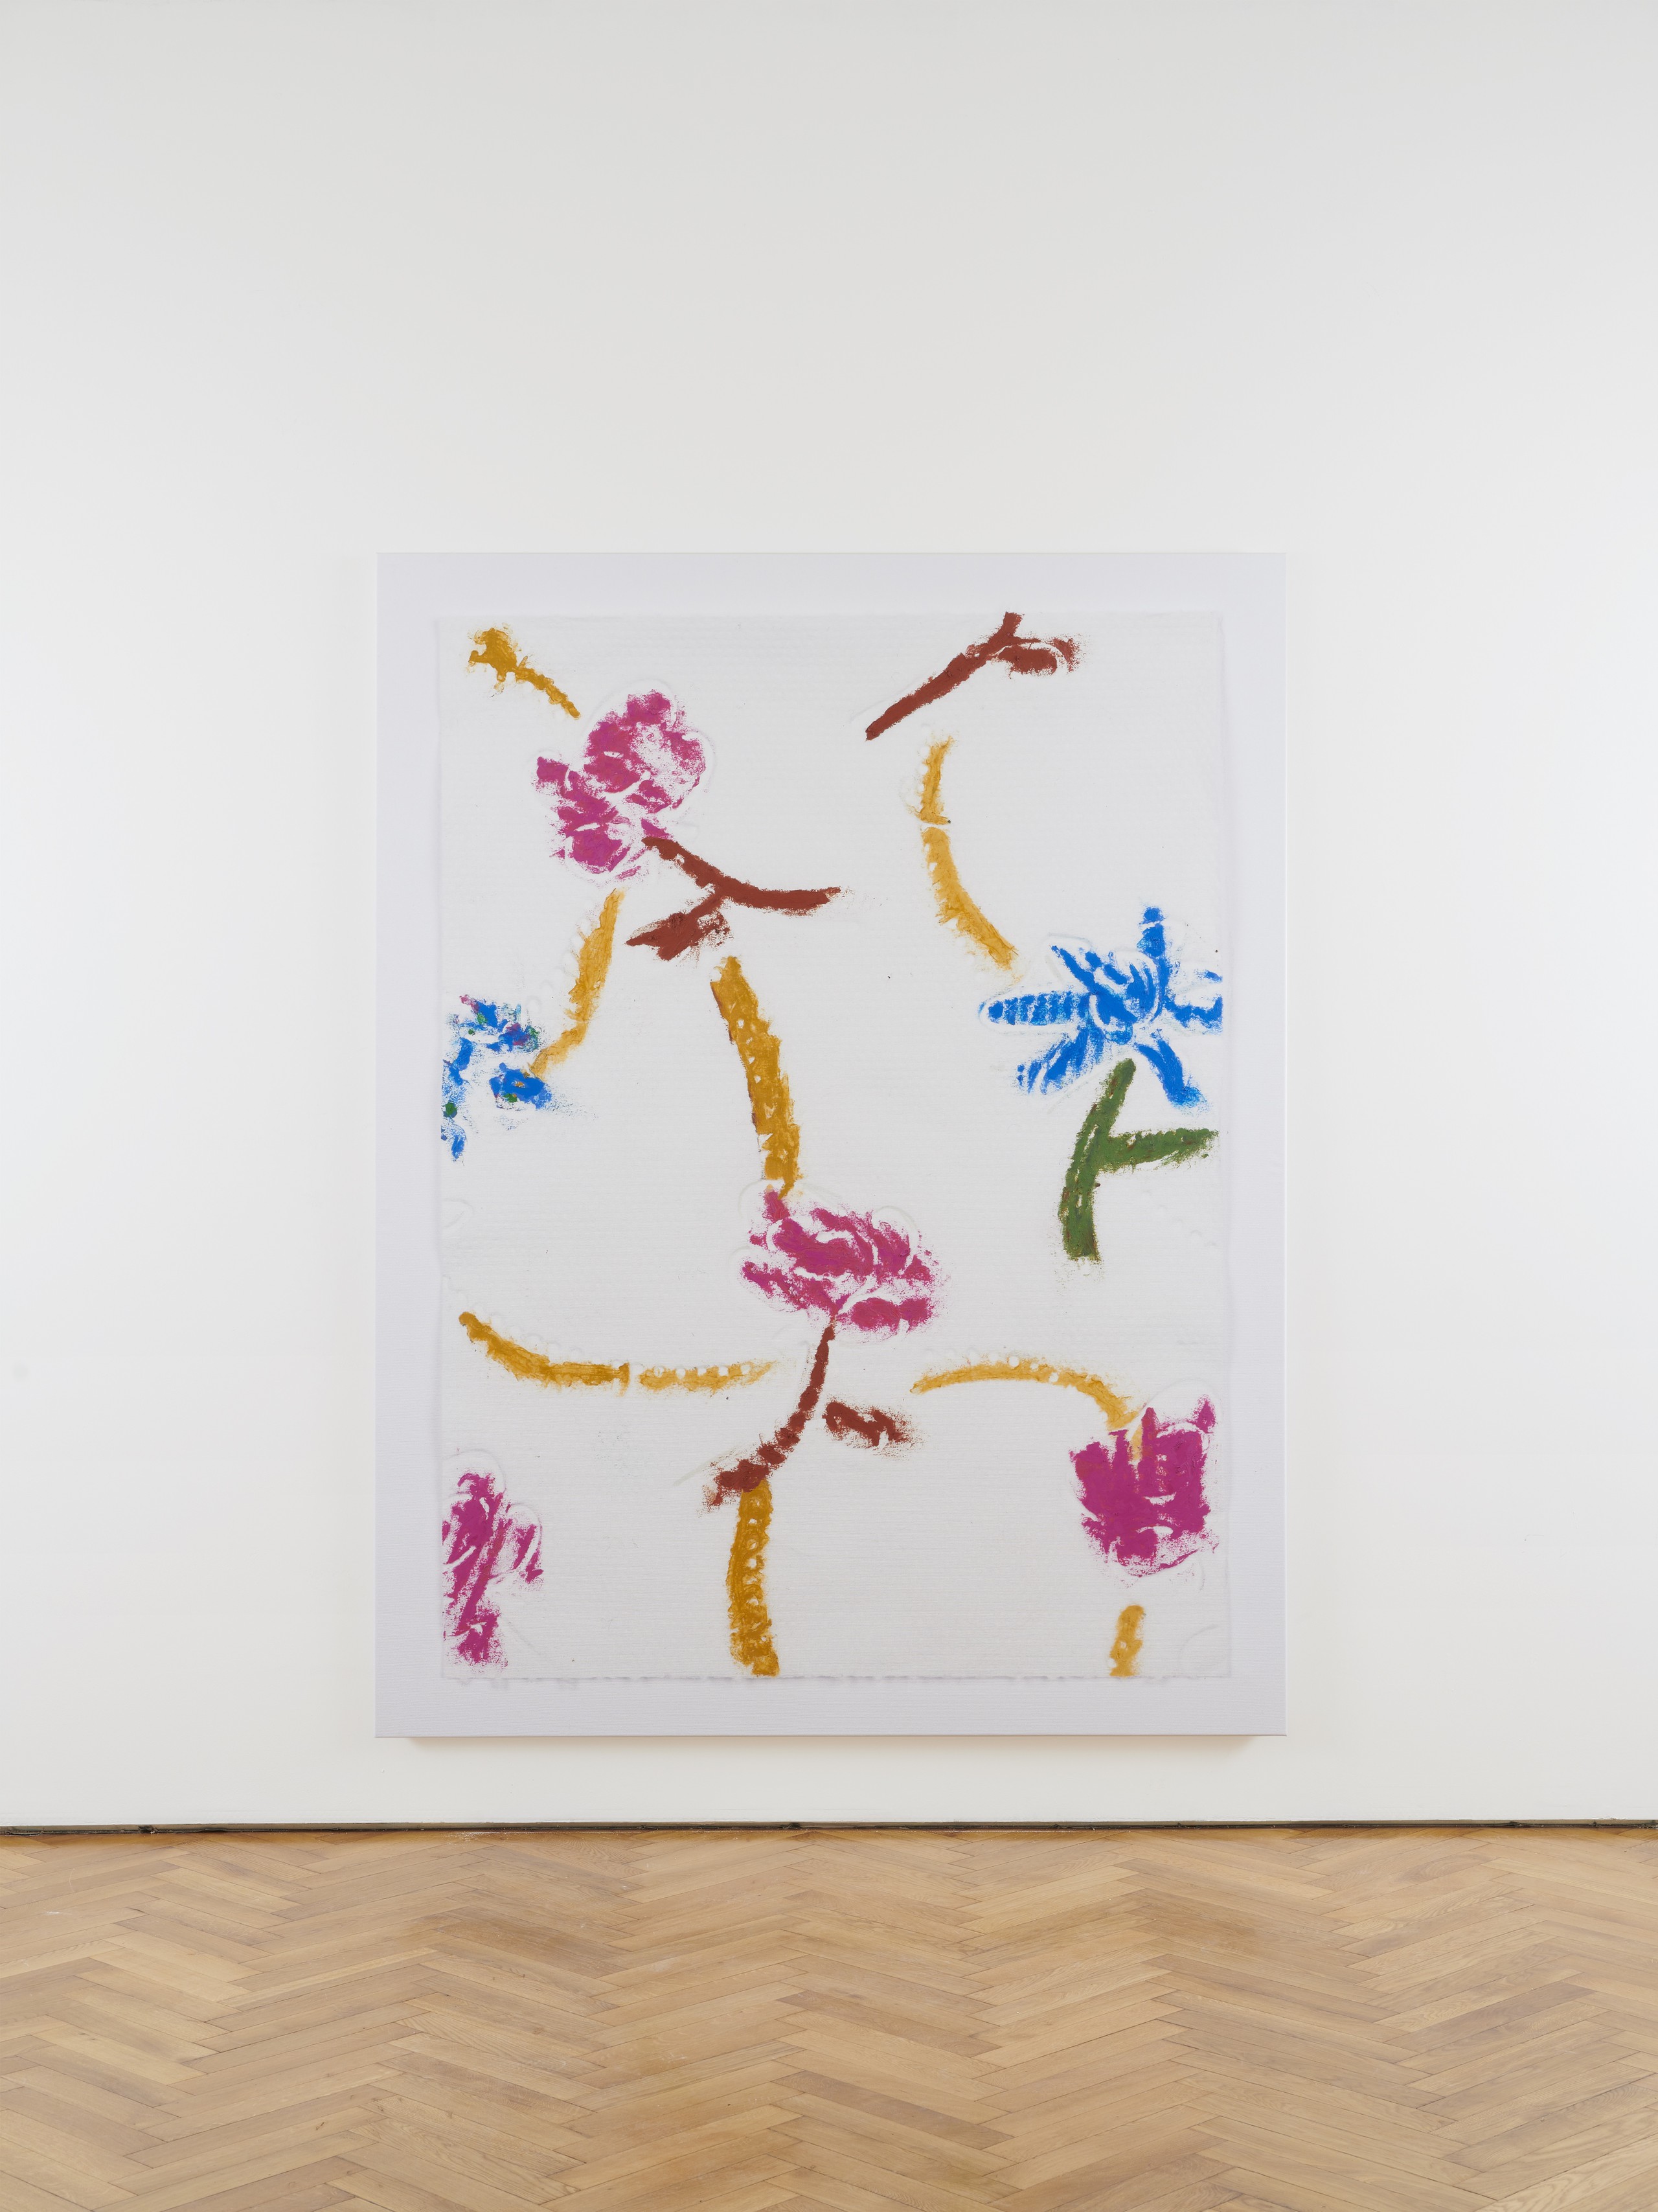 Kaspar Müller, Untitled, 2020, UV cured ink and Sennelier oil pastel on canvas, 210 x 160 x 3 cm